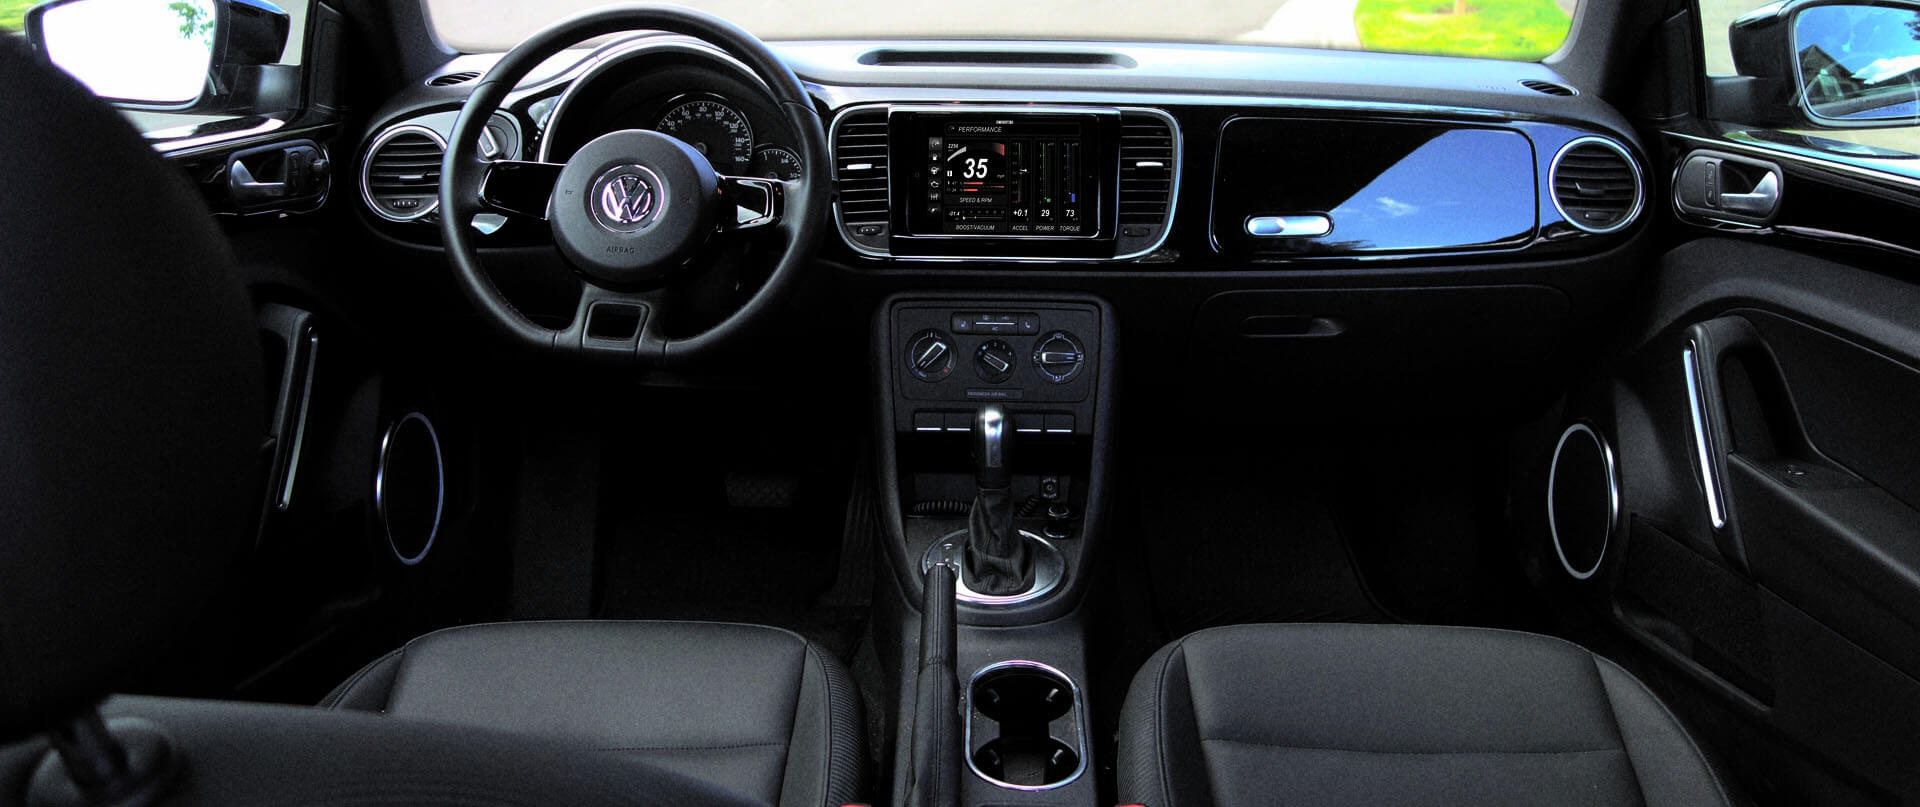 Volkswagen Eos dash kit